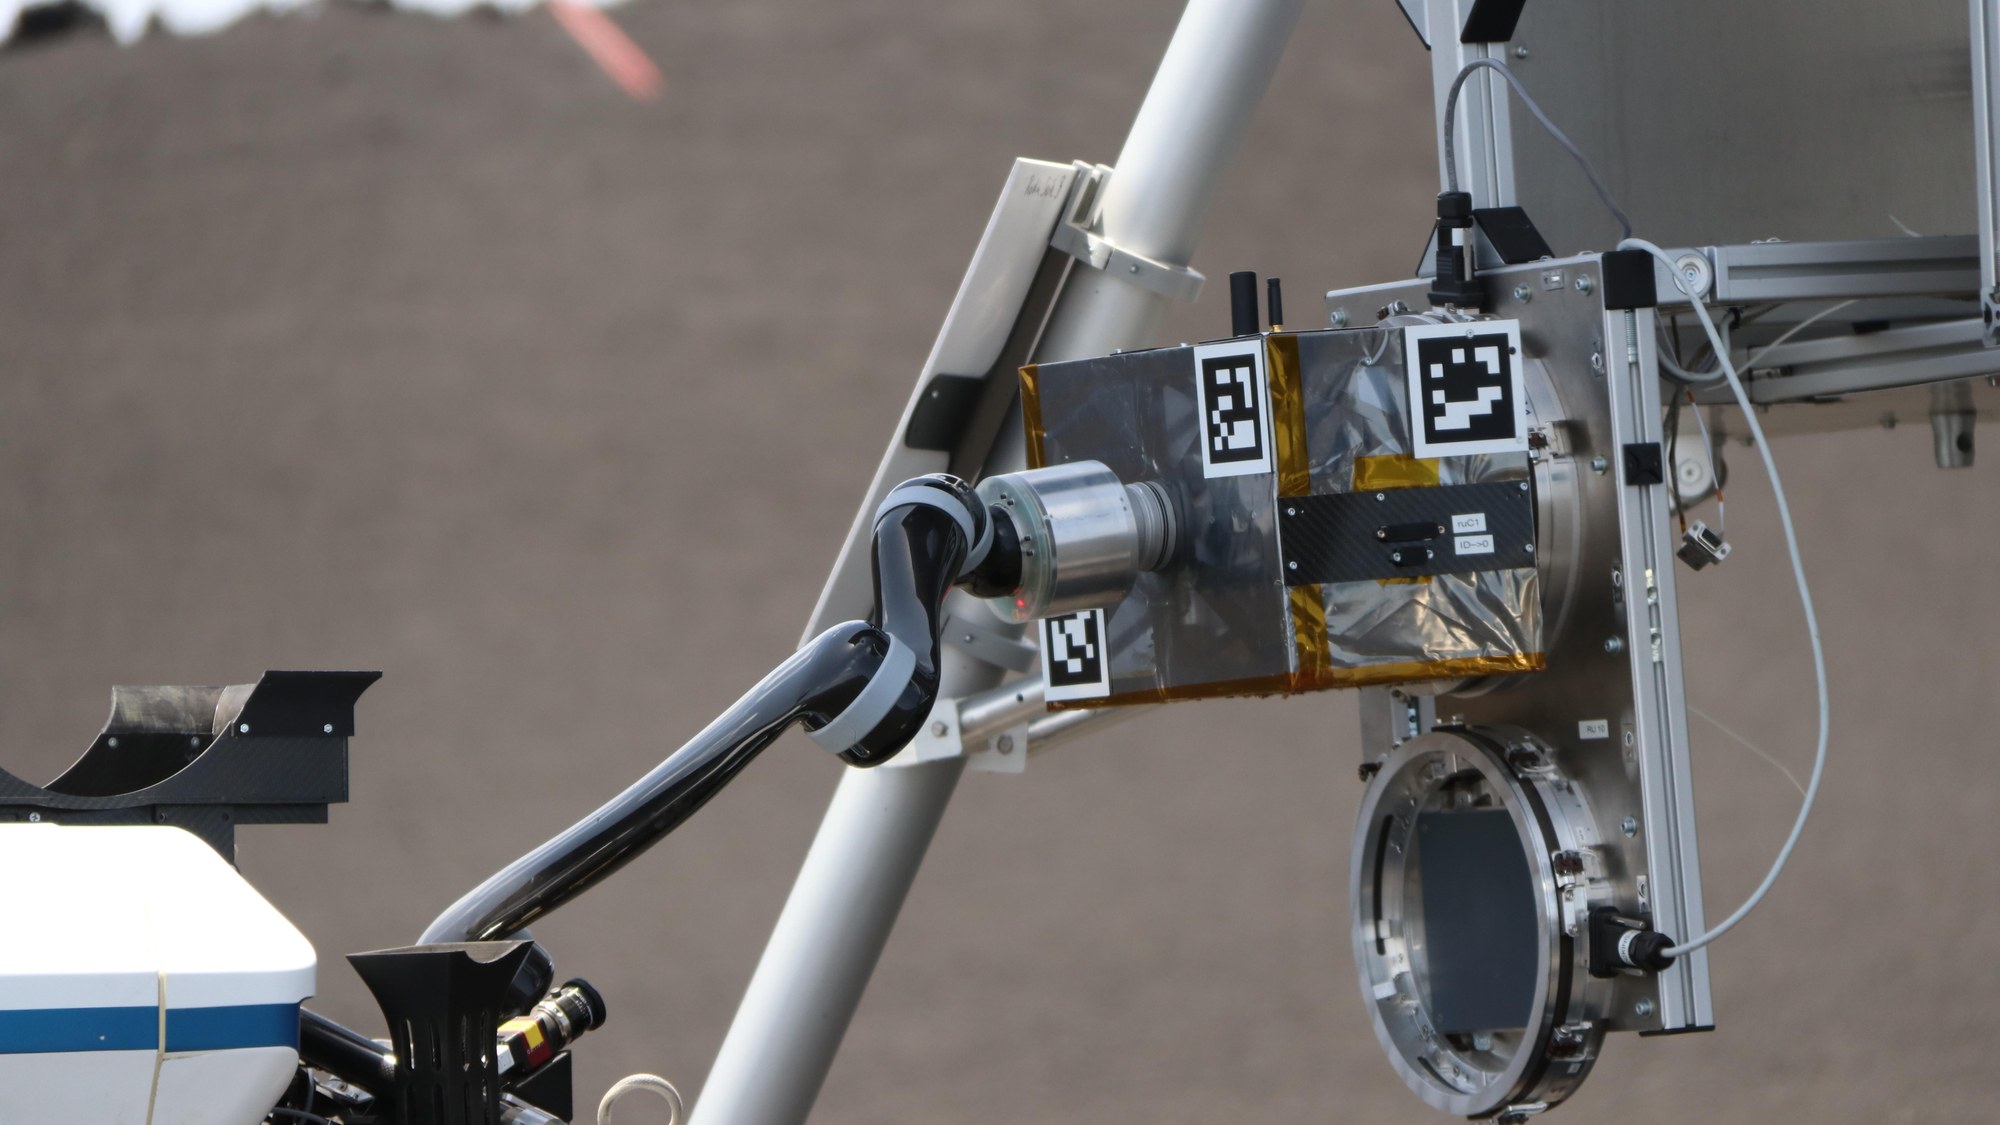 Working autonomously: Rover LRU-2 using the sensor unit